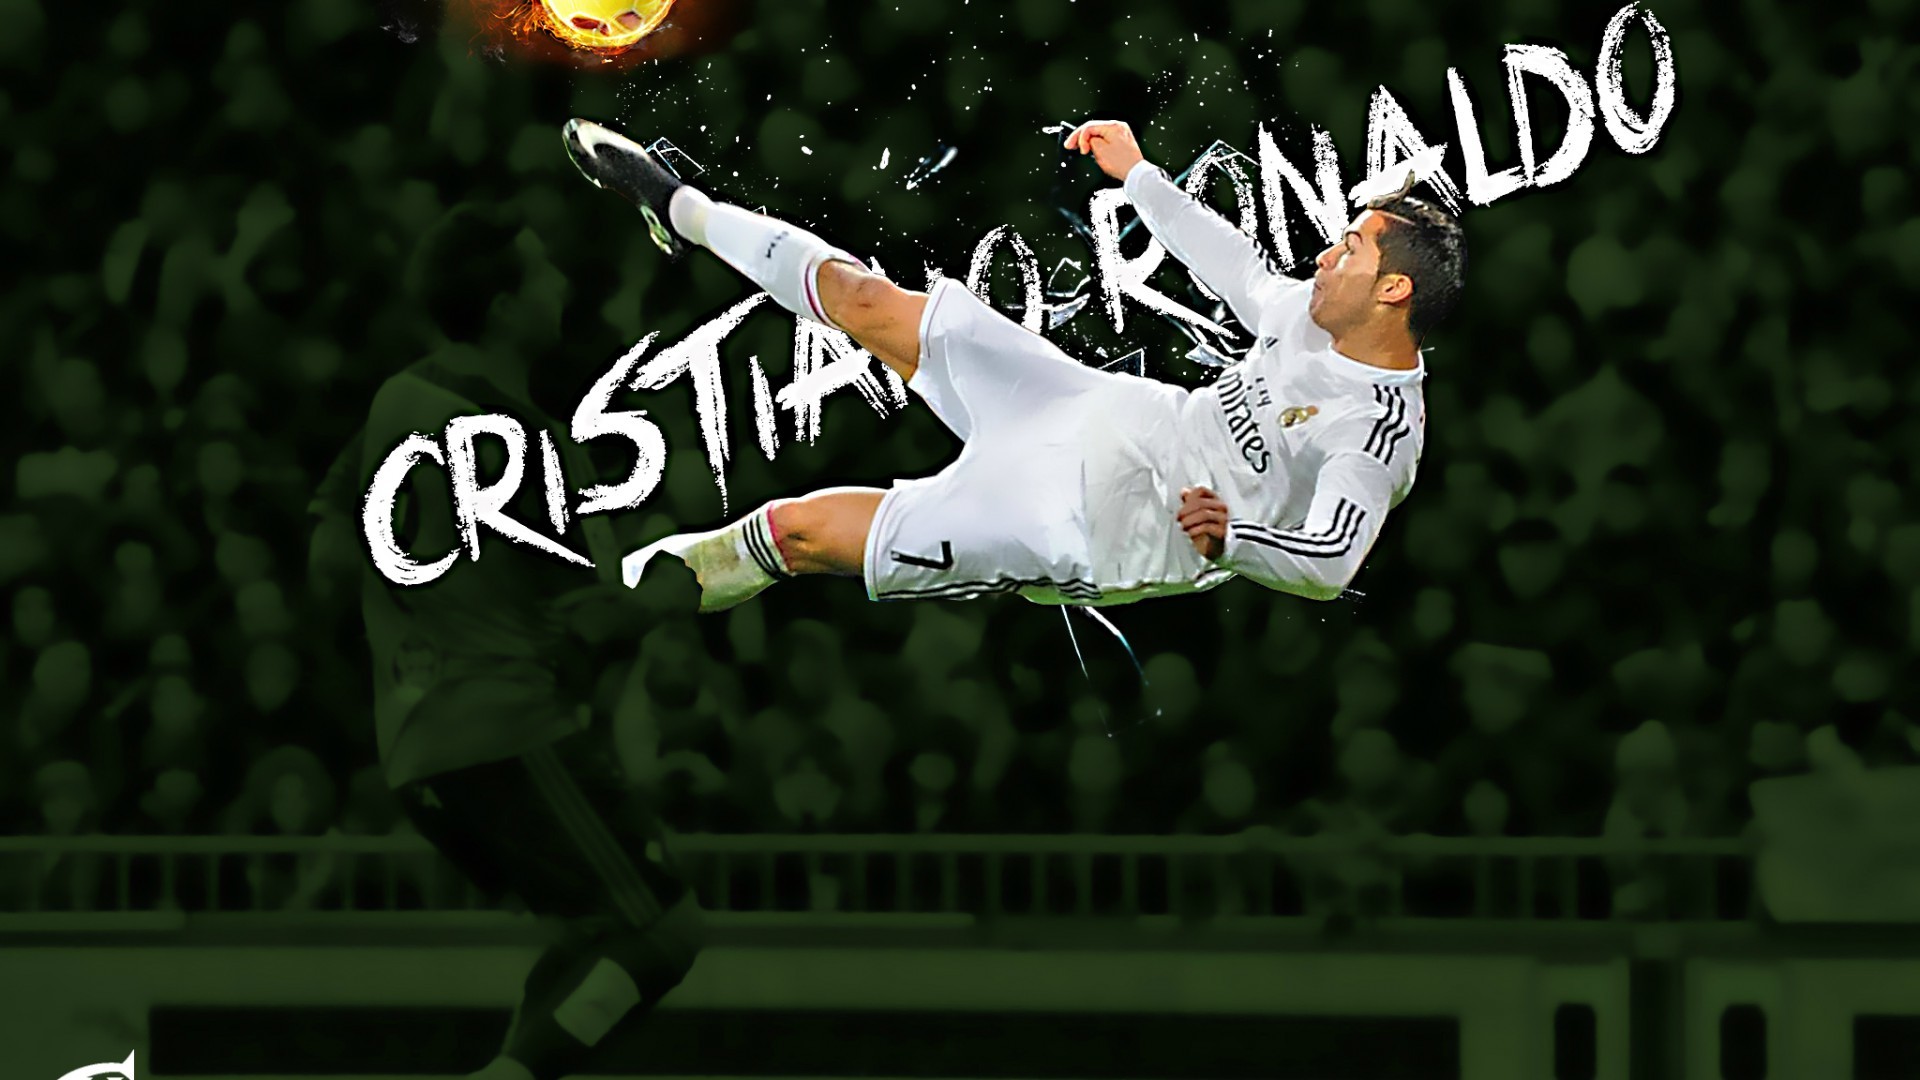 Cristiano Ronaldo Wallpaper Nike 2018 58 pictures